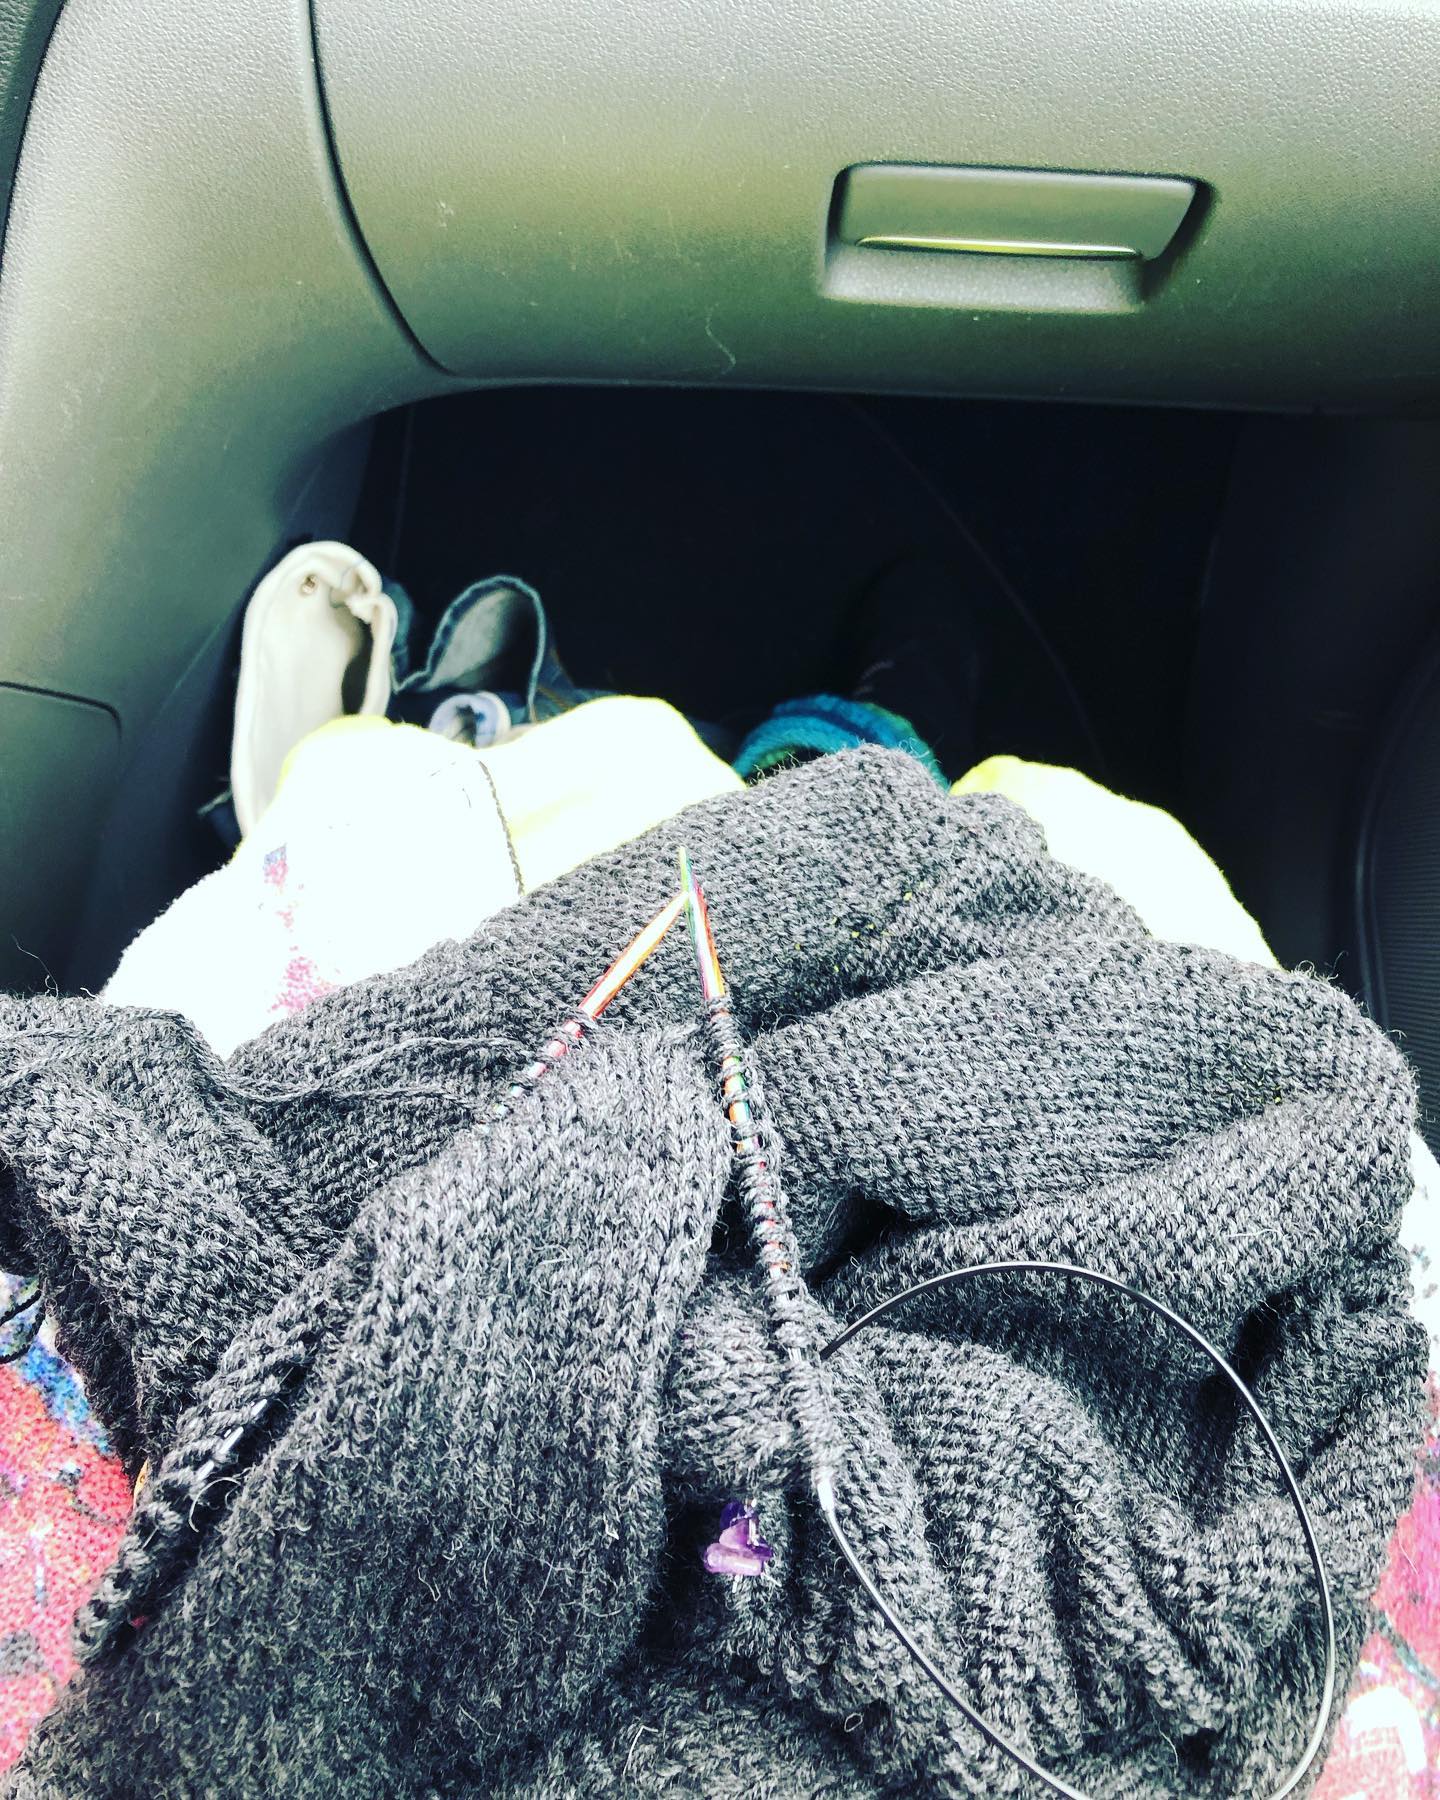 Teststrick on Tour! 
#annaswollsöckli #classicosweater #knitting #knittingpattern #knittersofinstagram #teststricken #menden #sauerland #drops #dropsflora #strickenistmeinyoga #strickenmachtglücklich #strickenistwiezaubernkönnen #wool #alpaka #strickenimauto #ontheroad #ford